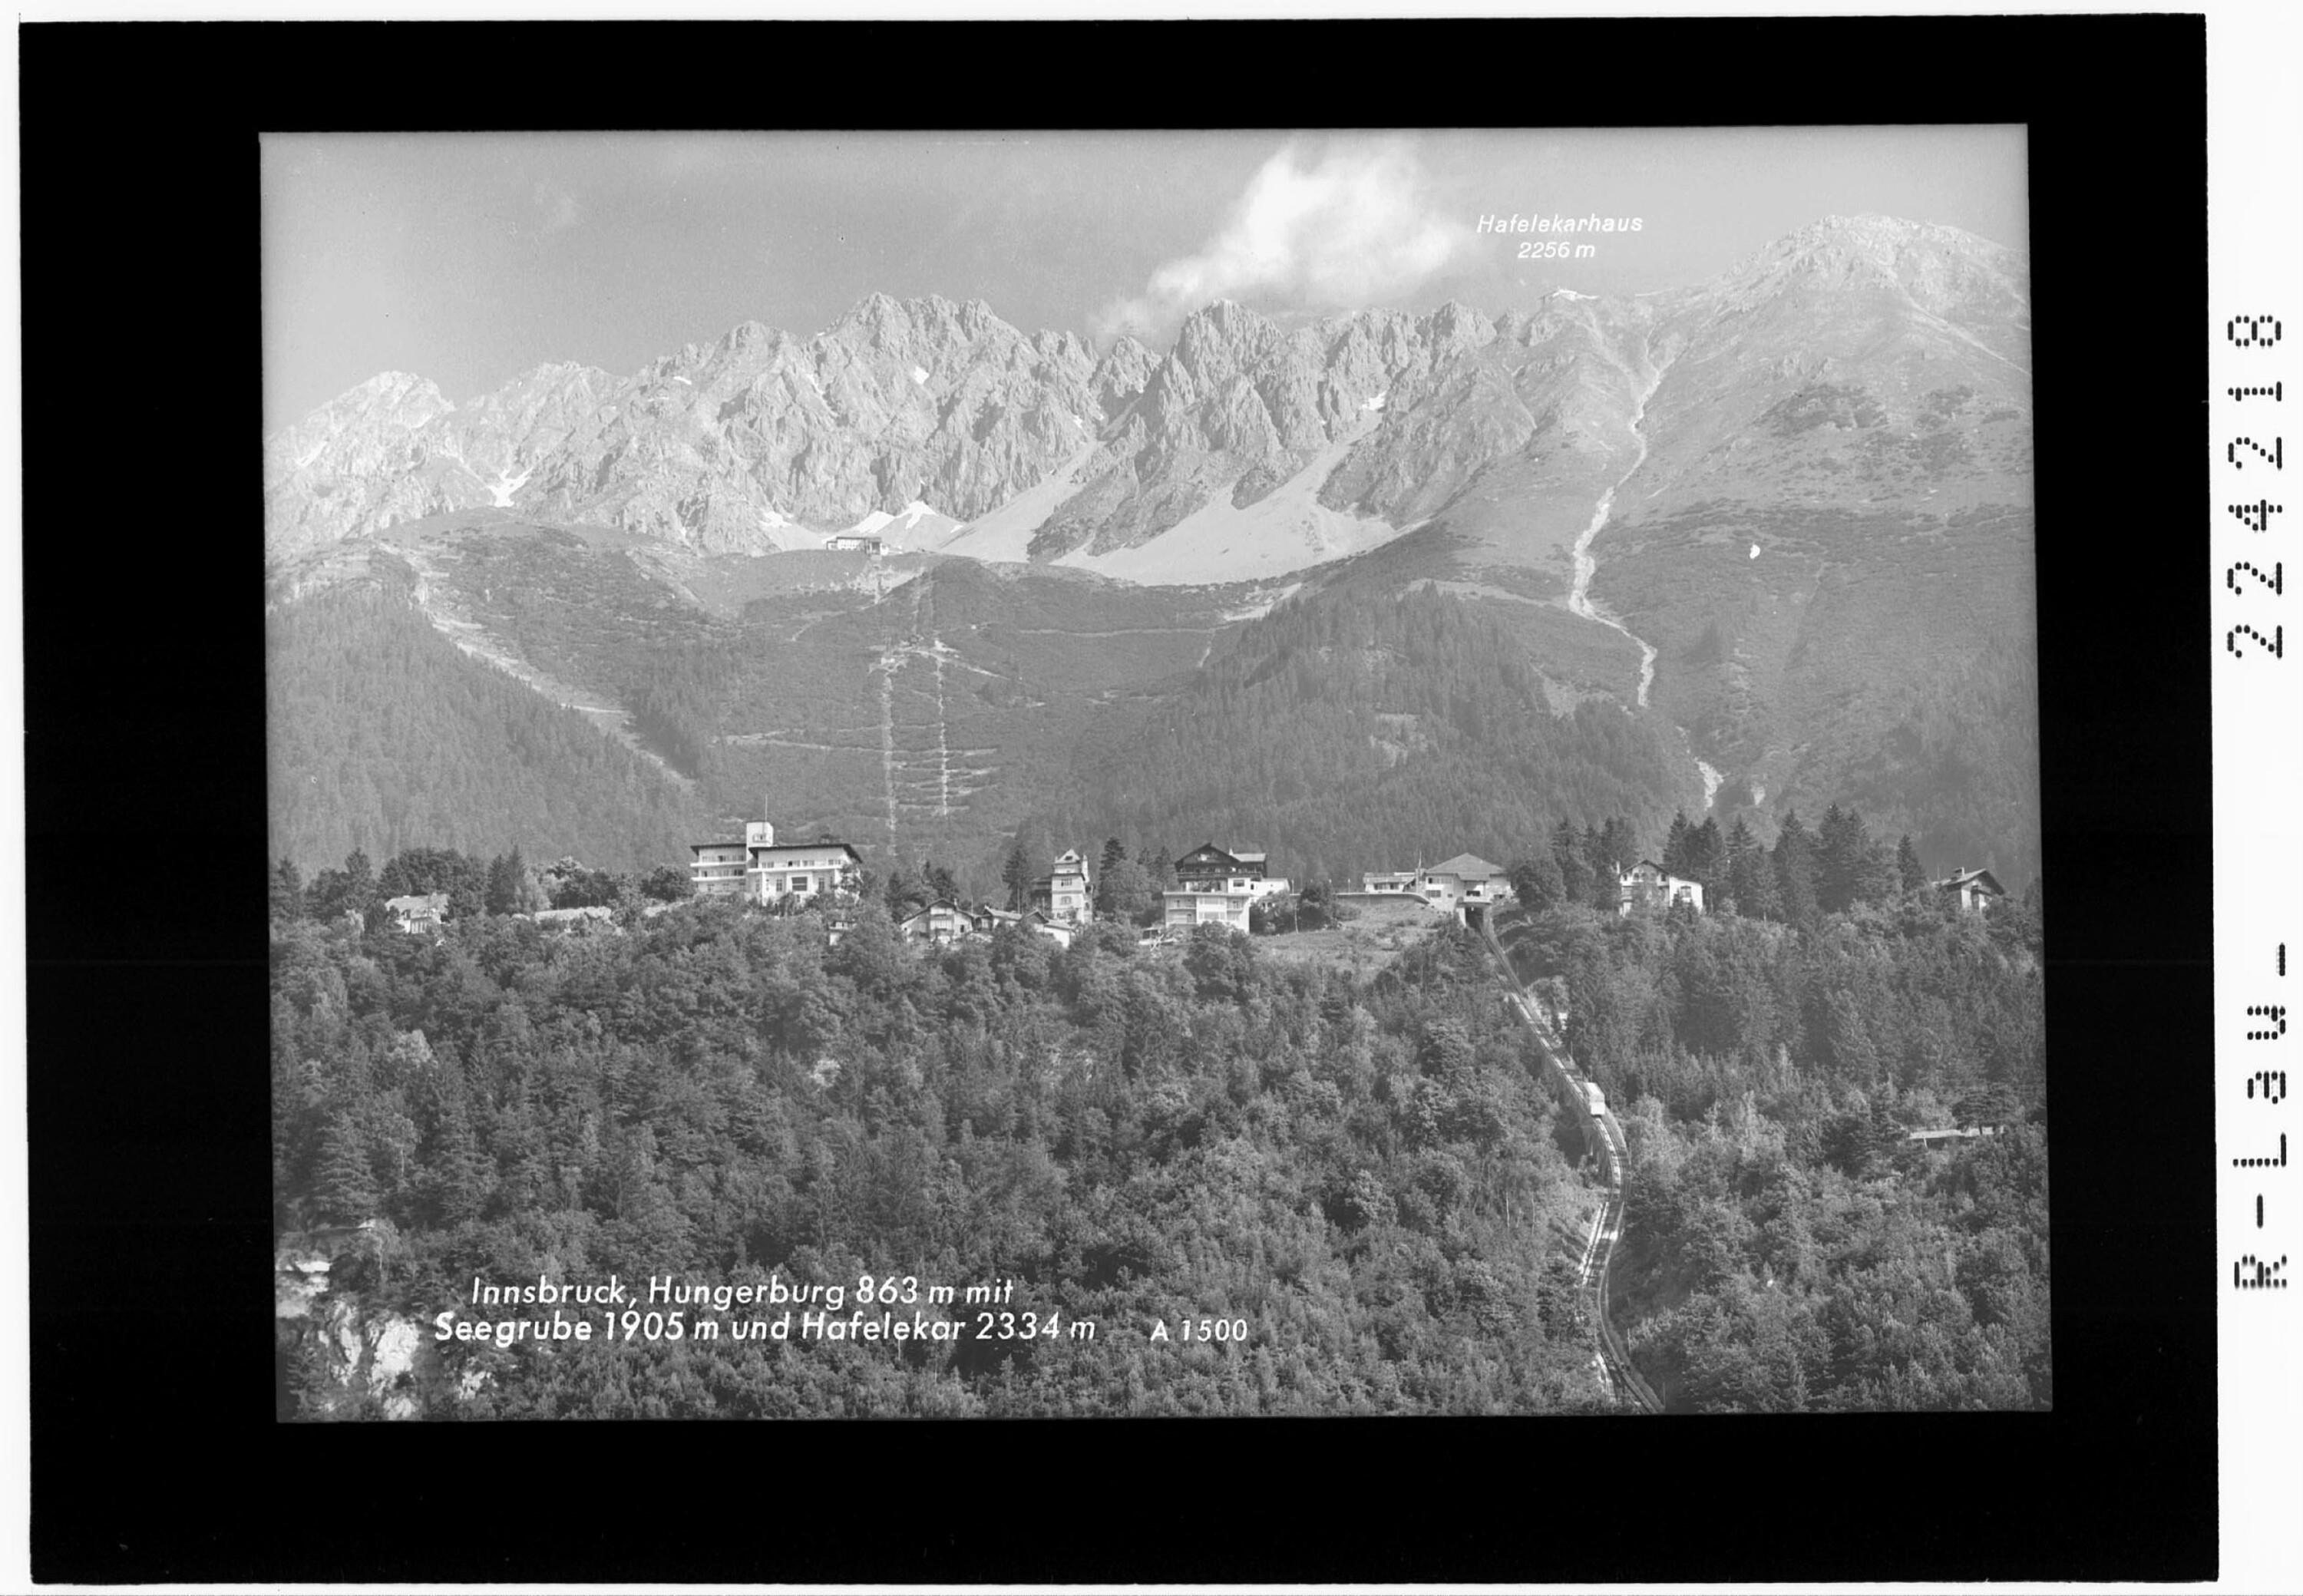 Innsbruck / Hungerburg 863 m mit Seegrube 1905 m und Hafelekar 2334 m></div>


    <hr>
    <div class=